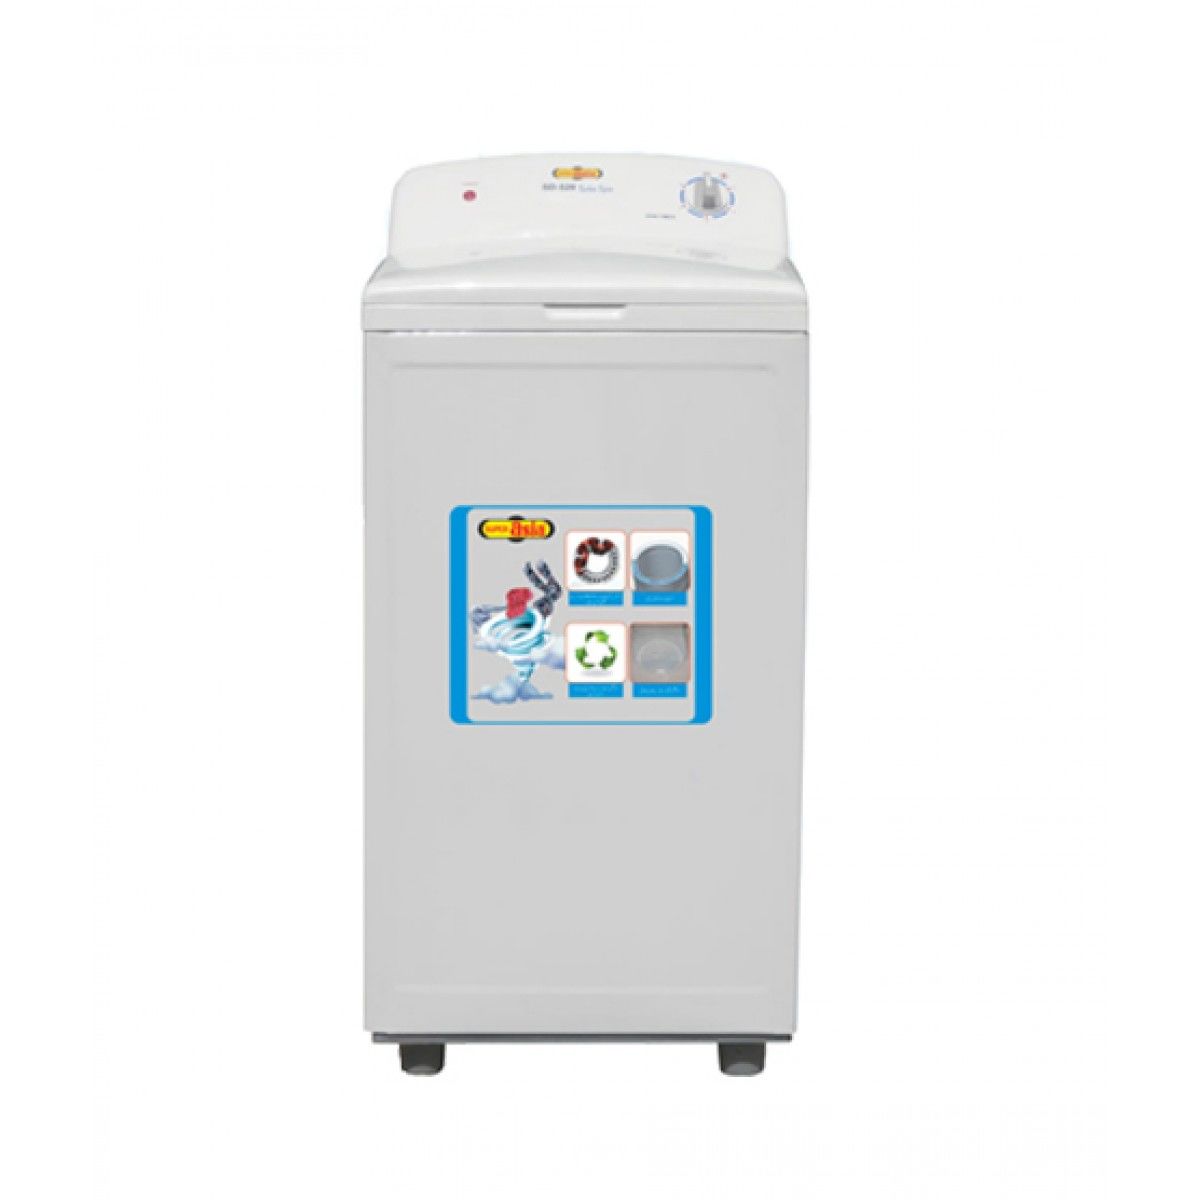 Super Asia Washing Machine Spinner – SD-520